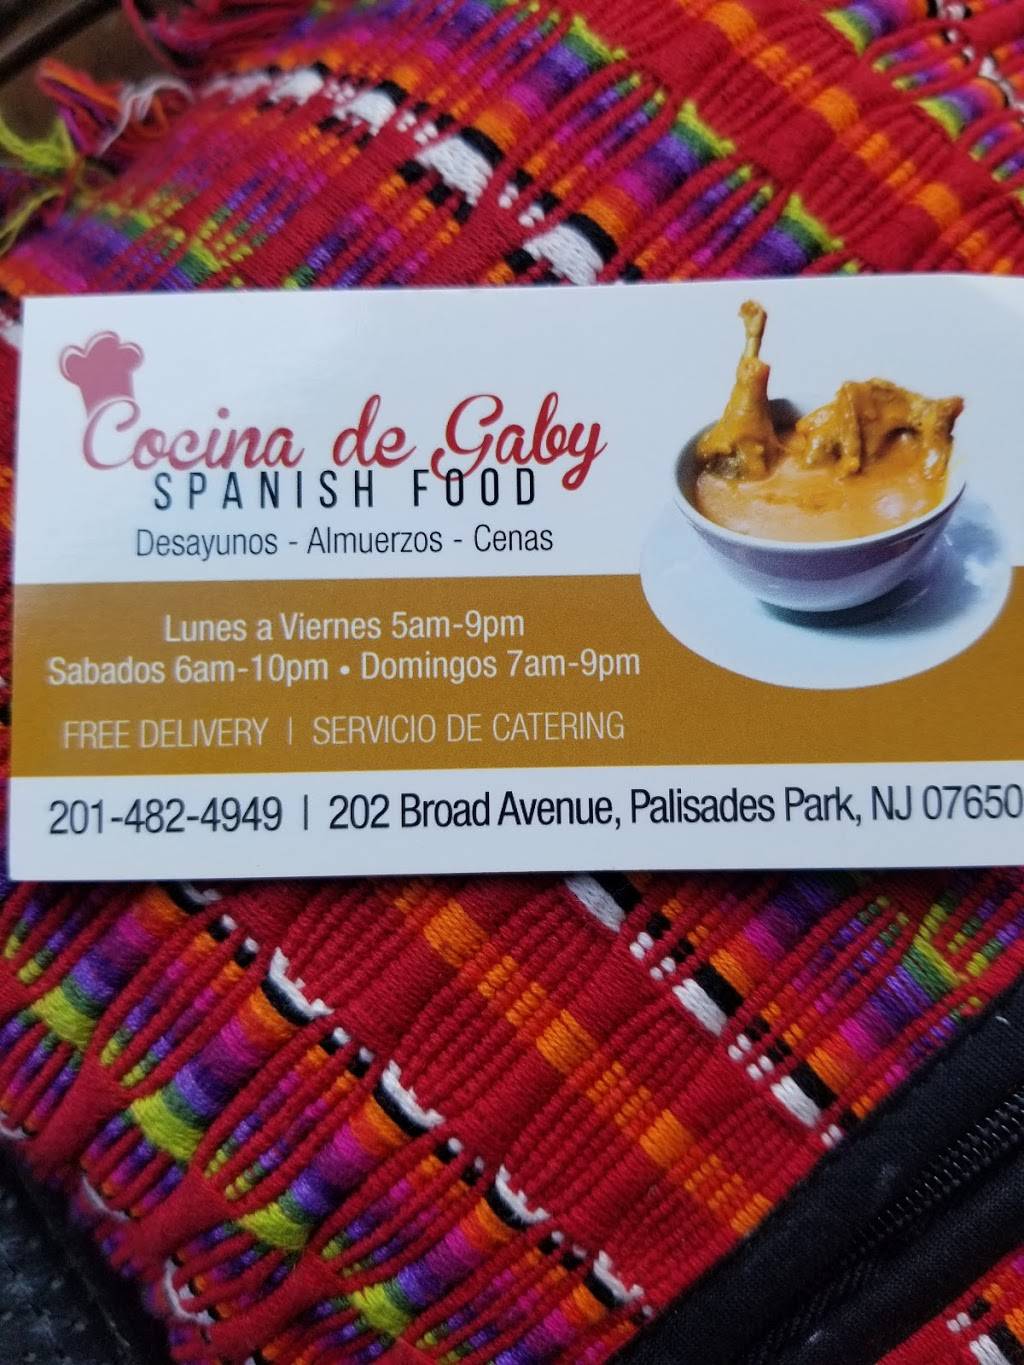 Cocina De Gaby | restaurant | 202 Broad Ave, Palisades Park, NJ 07650, USA | 2014824949 OR +1 201-482-4949